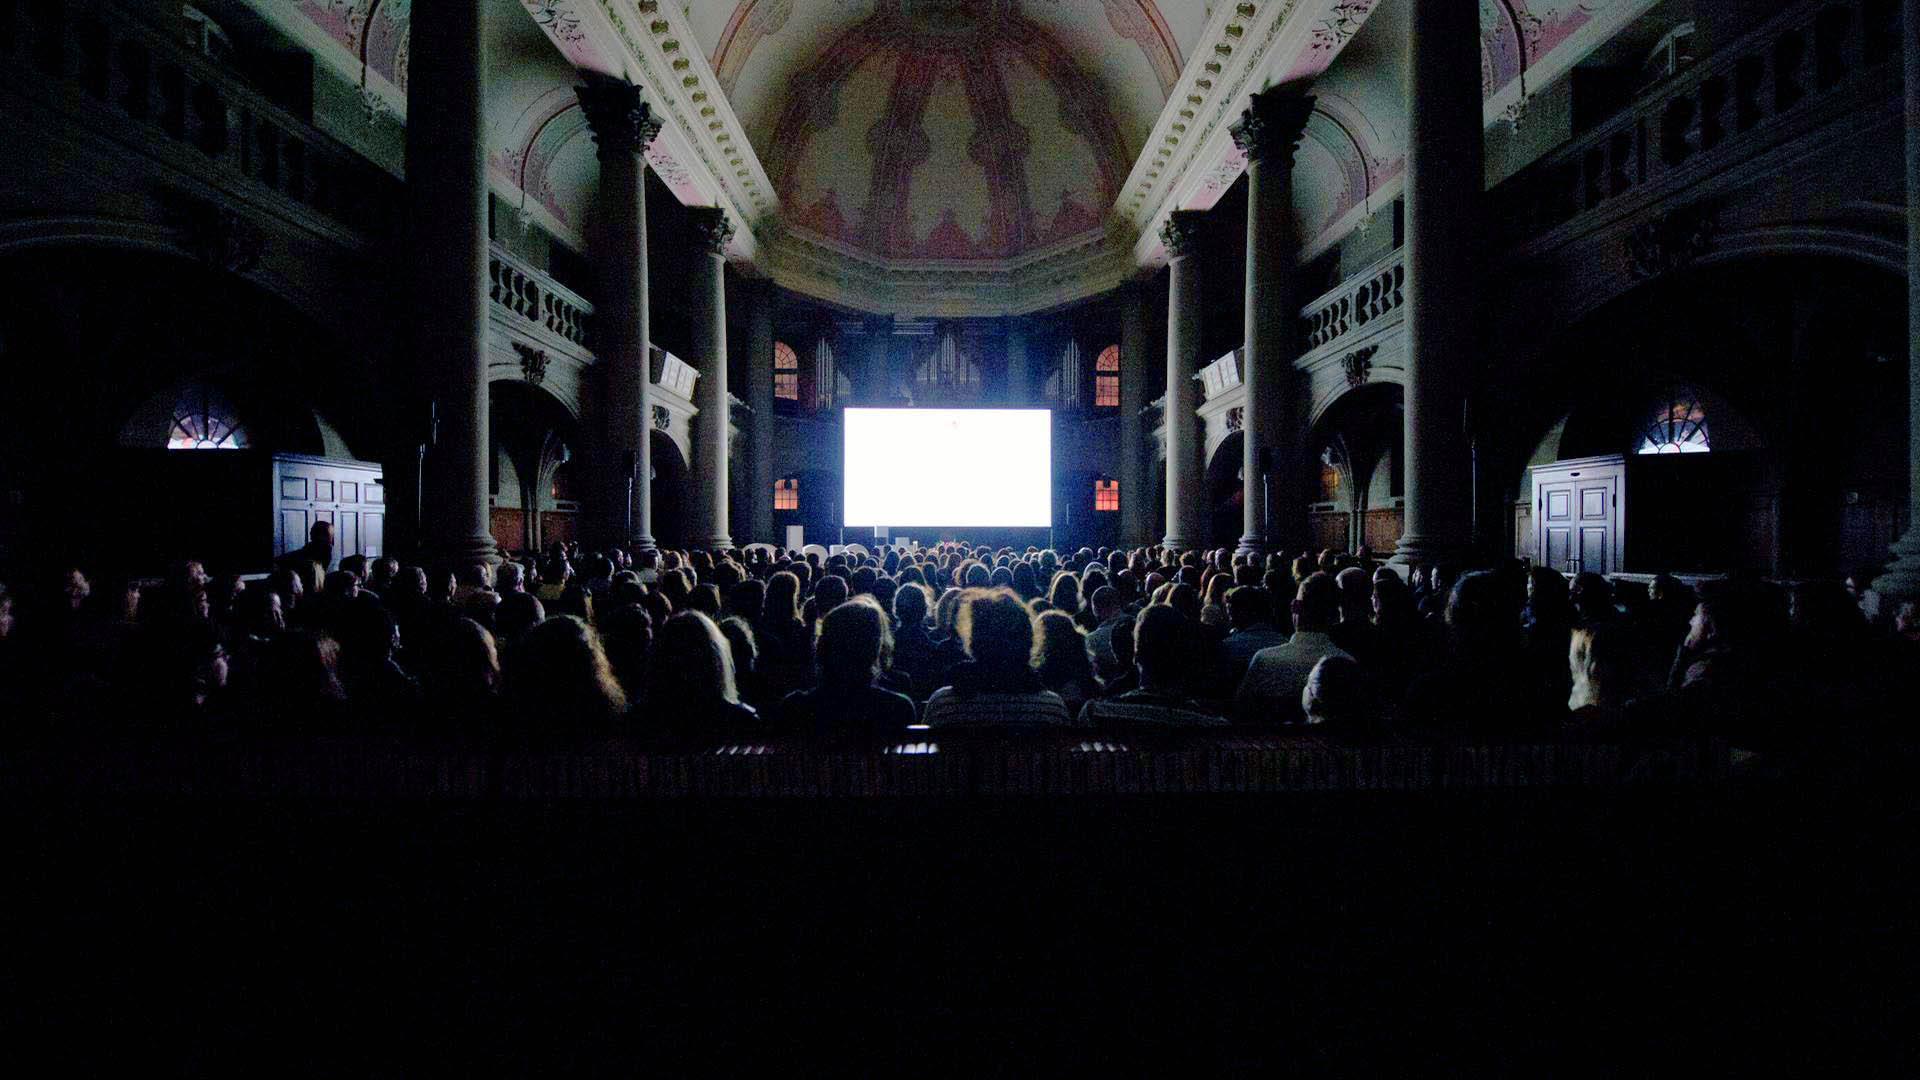  シュニット国際短編映画際会場の一つ、ベルン聖霊教会